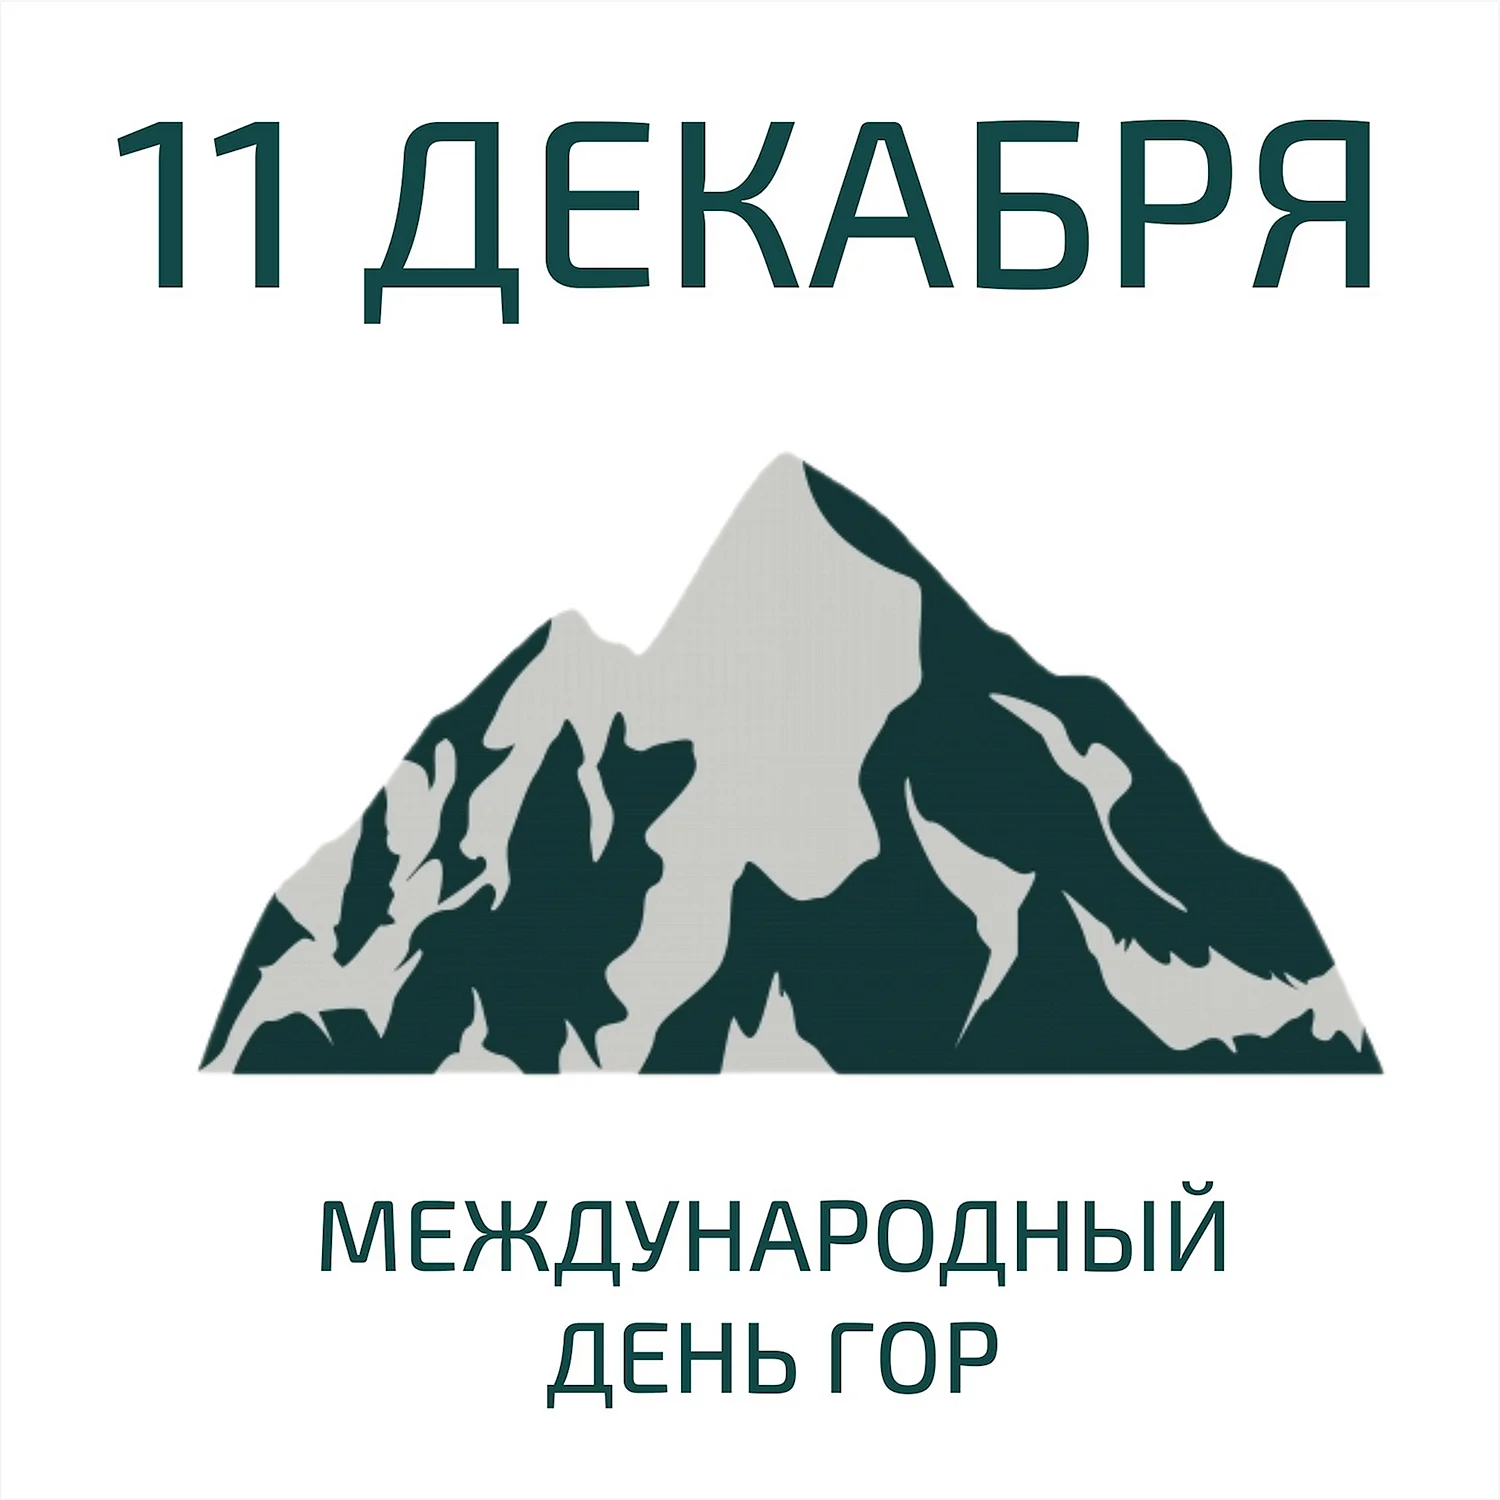 Международный день гор